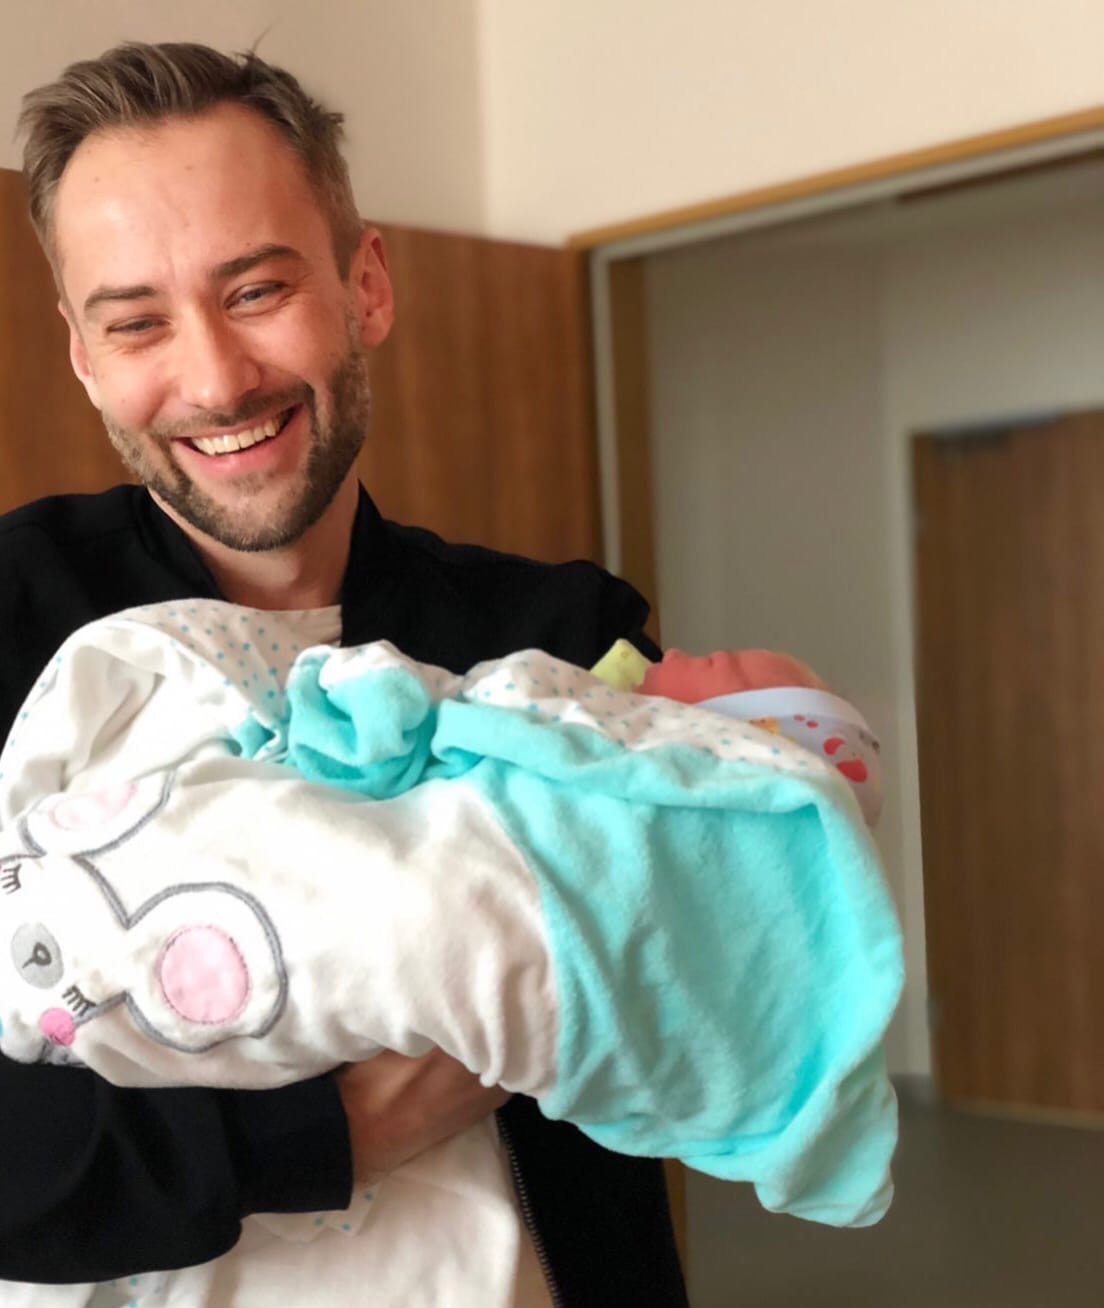 Дмитрий Шепелев поделился первым снимком новорожденного
